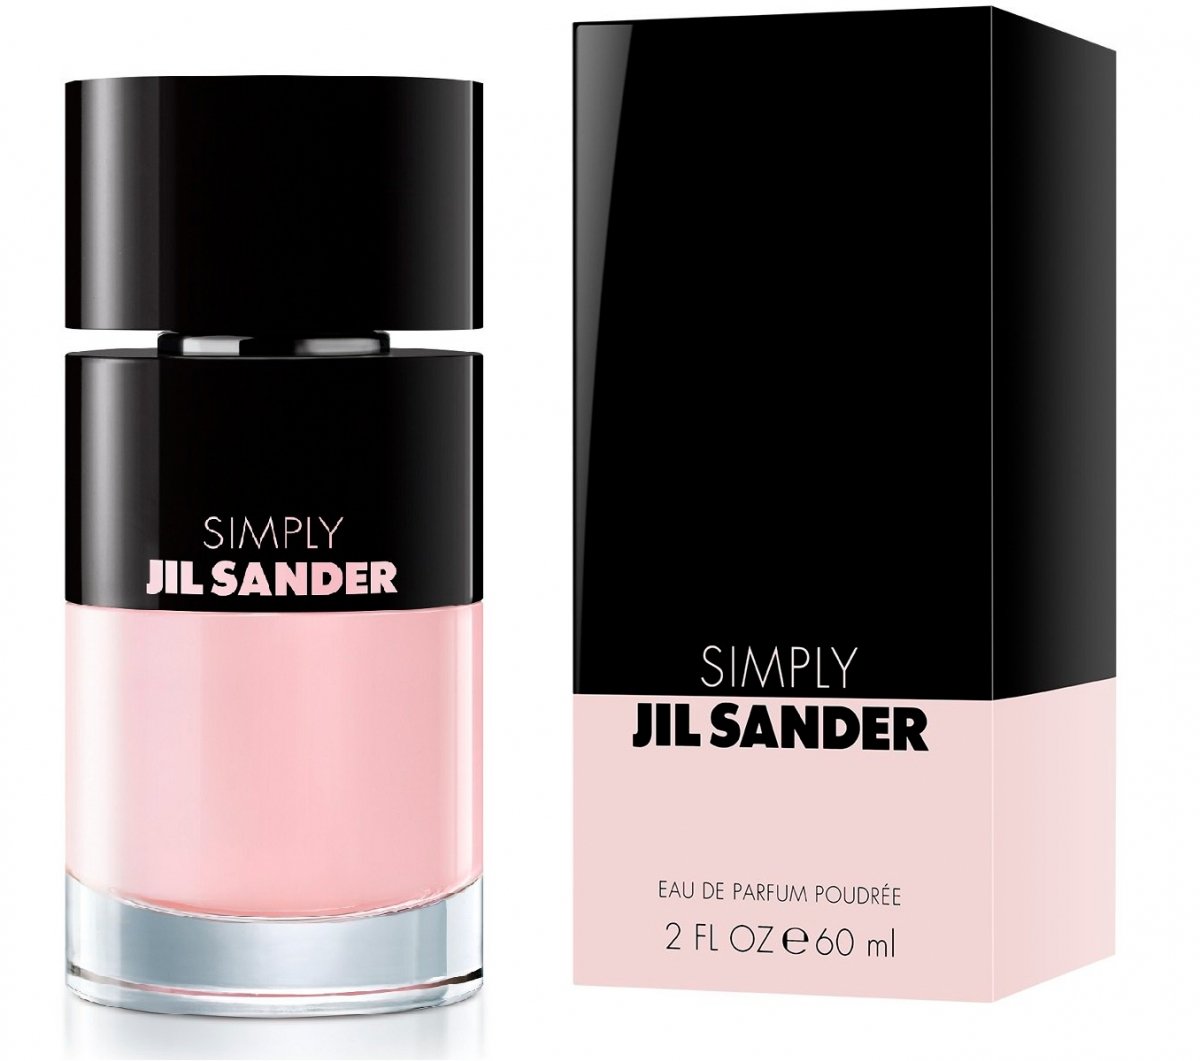 Simply by Jil Sander (Eau de Parfum Poudrée) » Reviews & Perfume Facts